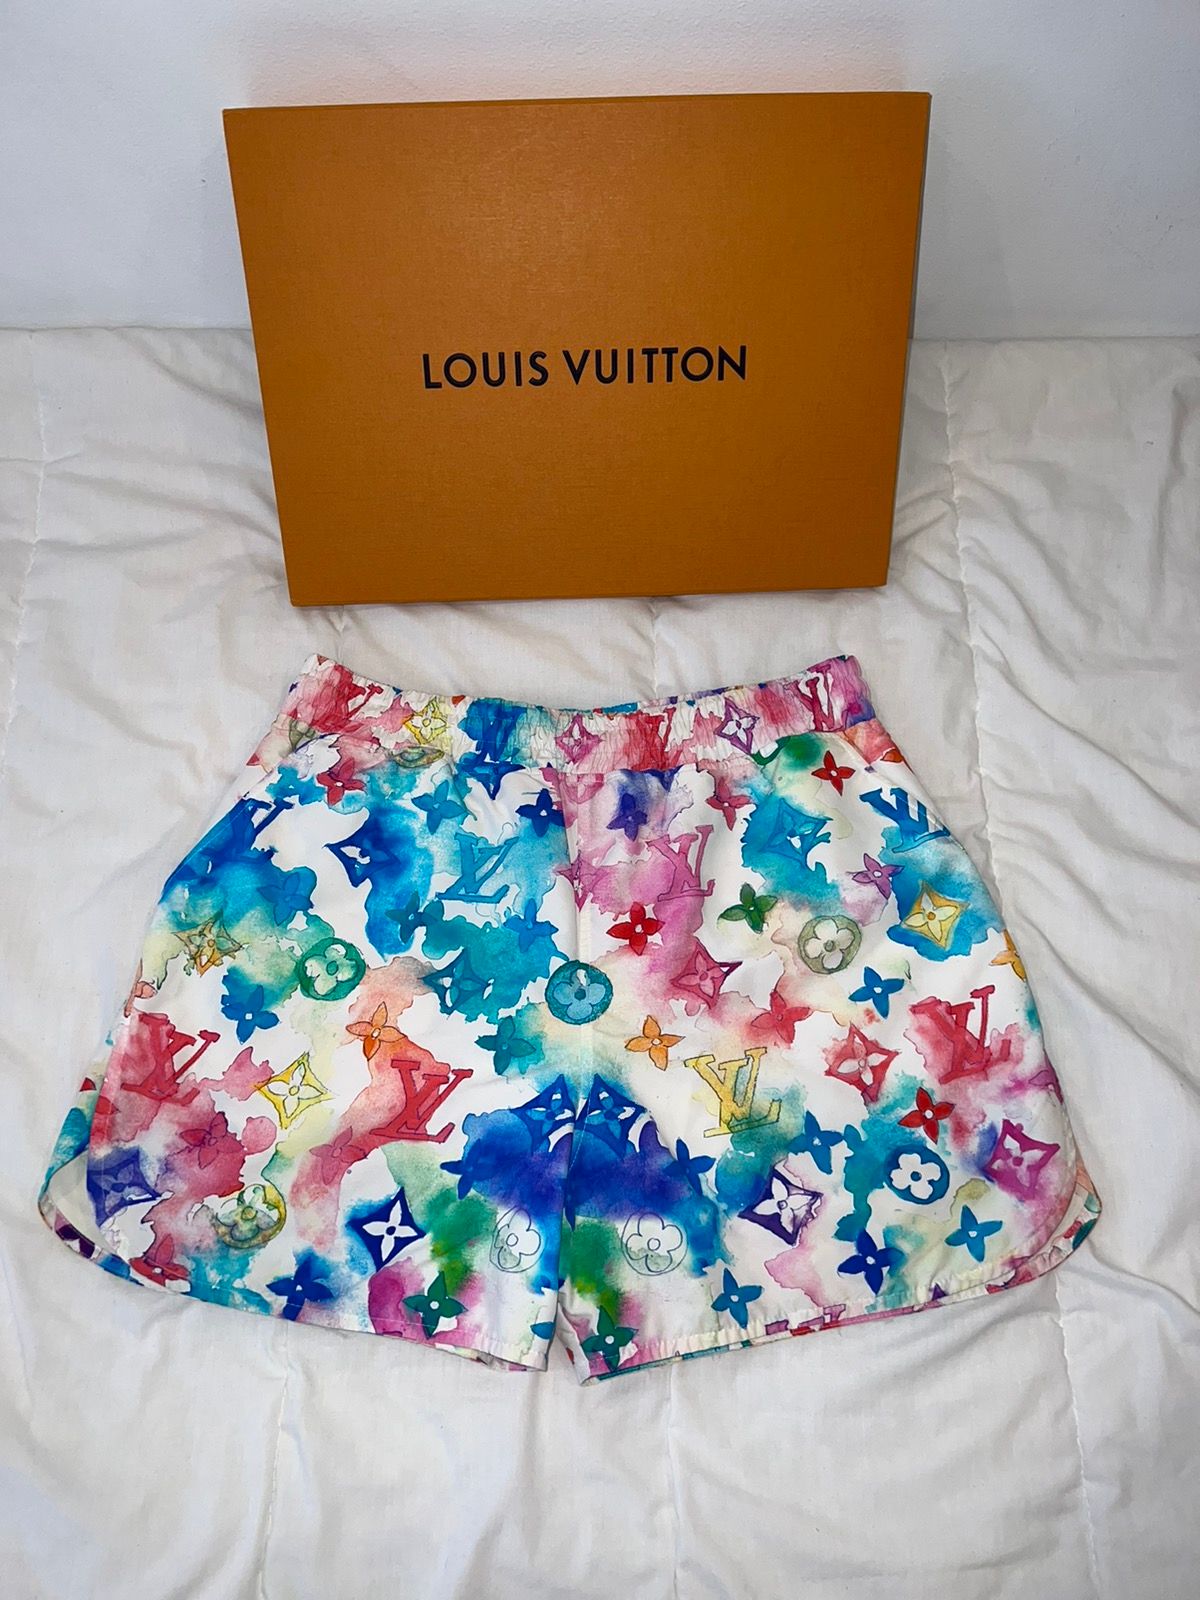 Louis Vuitton Louis Vuitton Virgil Abloh Monogram Watercolor Swim